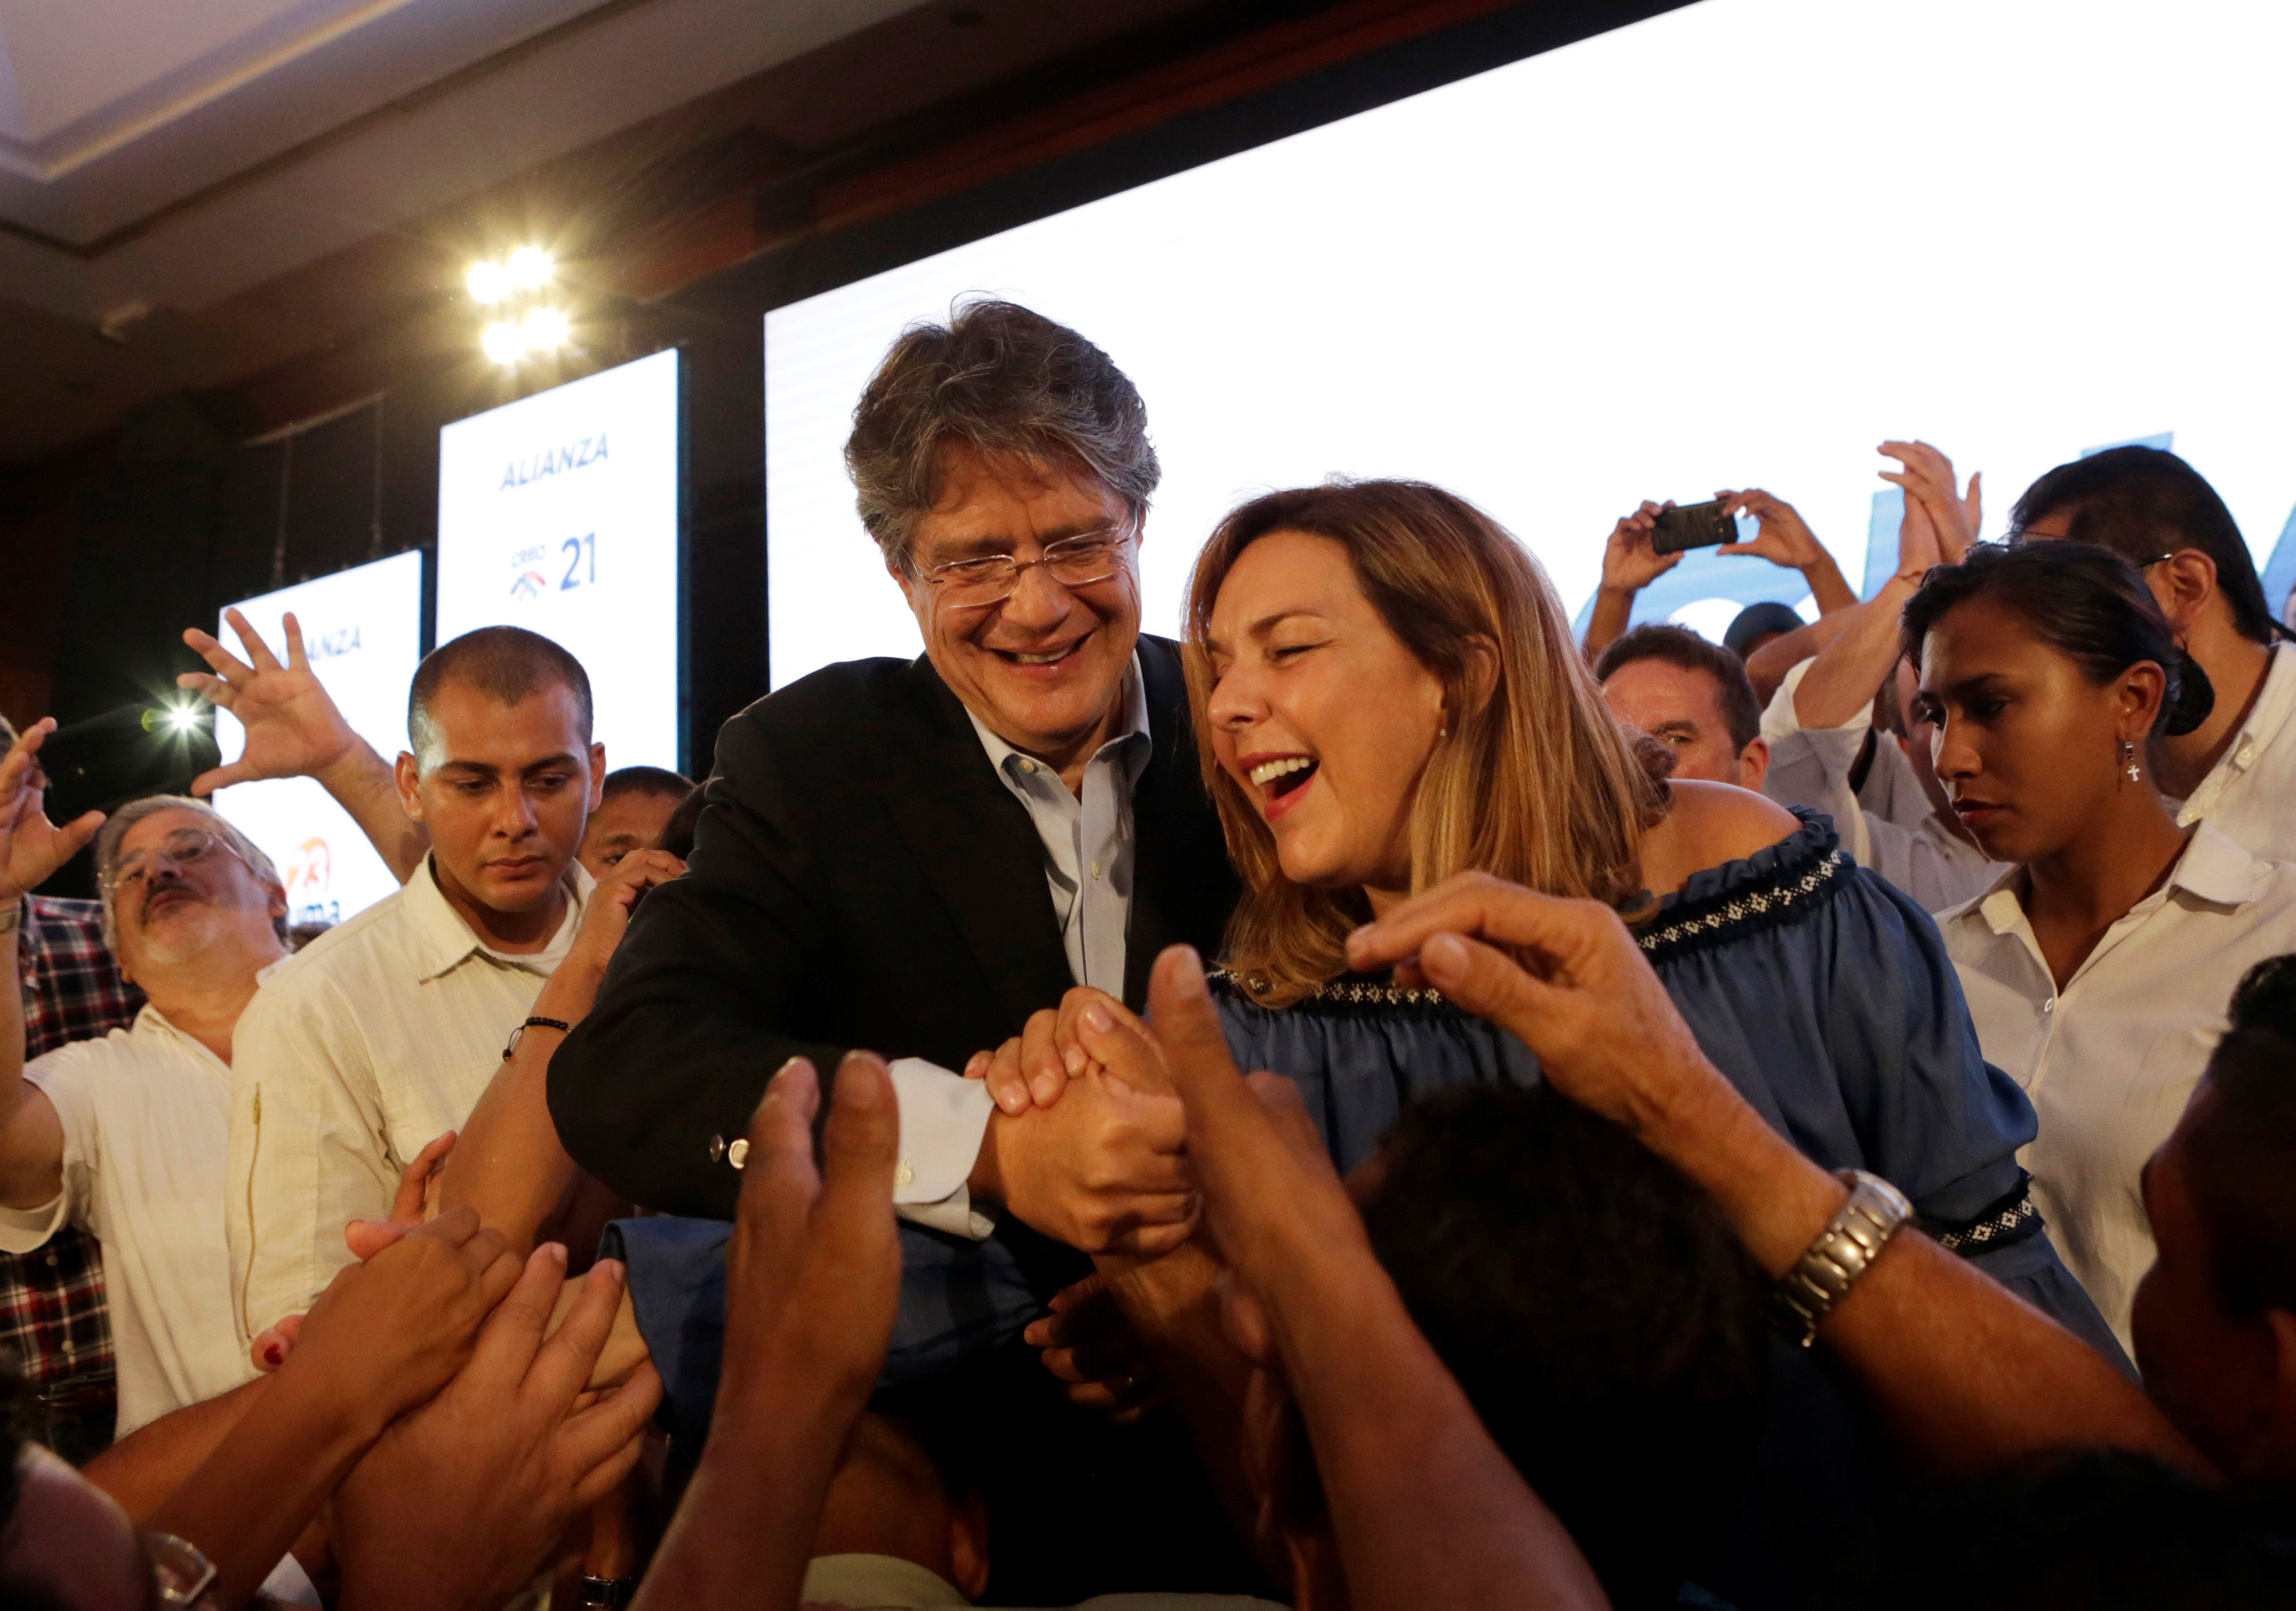 جوليرمو لاسو المرشح لرئاسة الإكوادر يحتفل مع زوجته بالنتائج الأولية للانتخابات